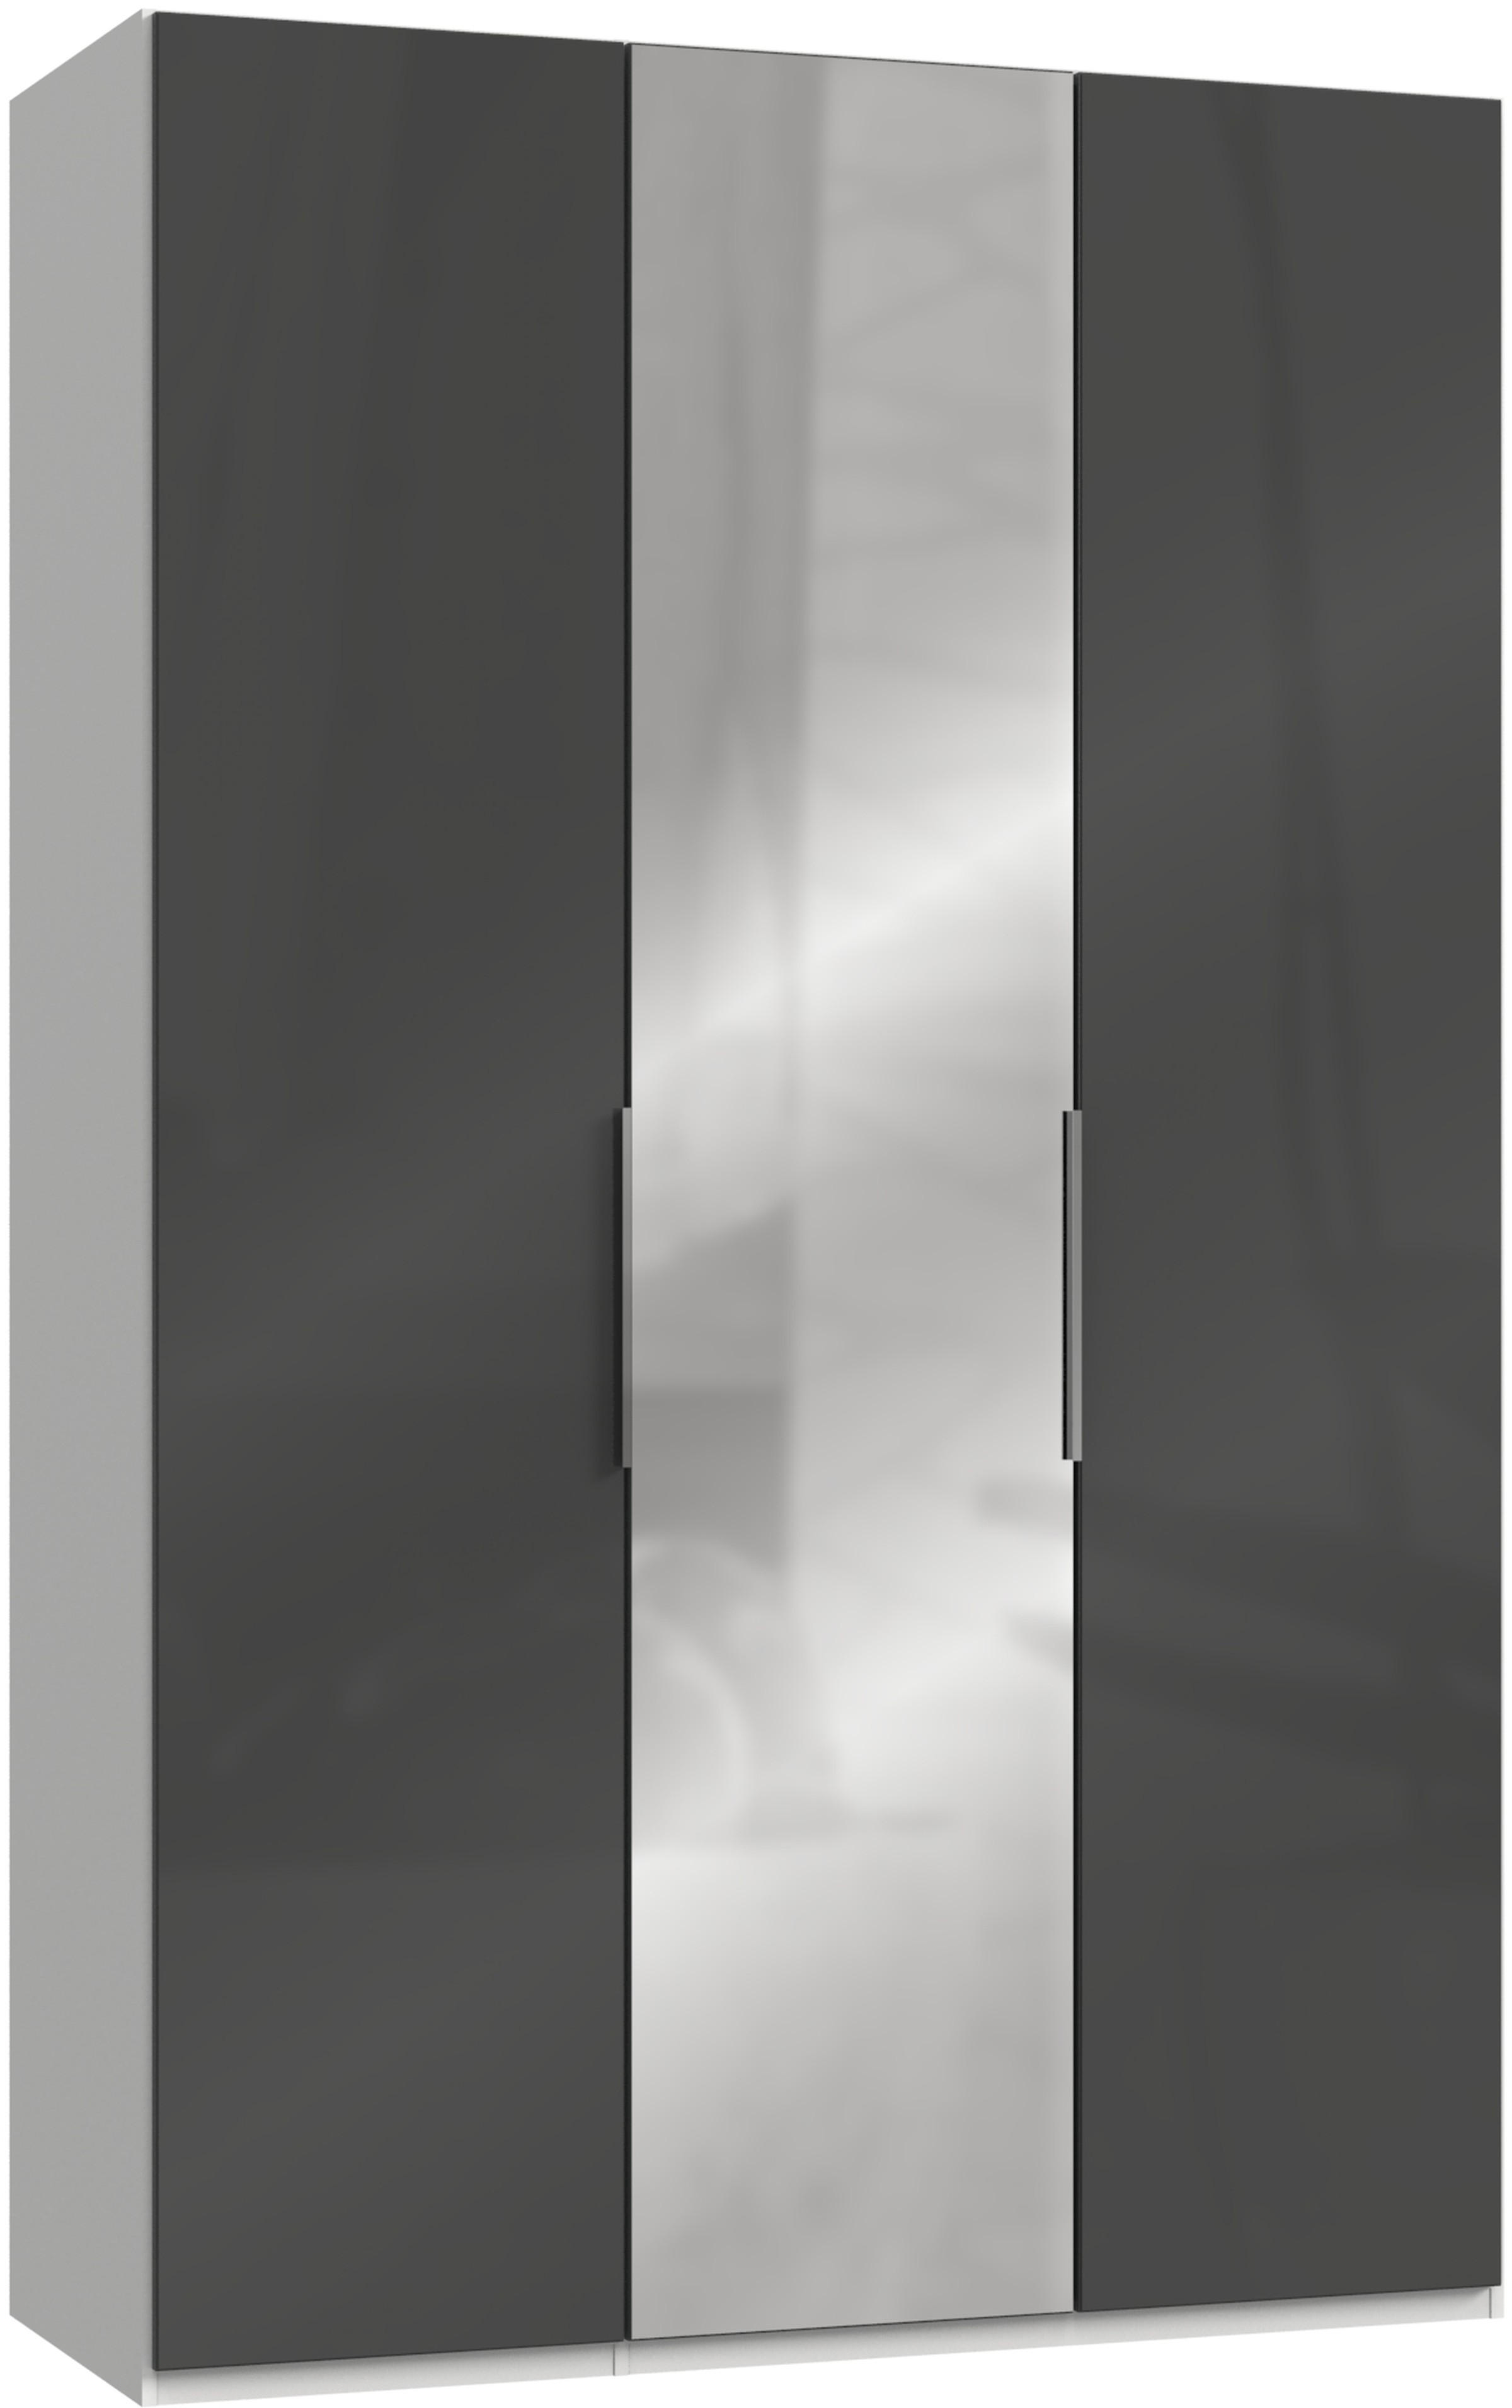 DREHTÜRENSCHRANK  in Grau, Weiß  - Chromfarben/Weiß, MODERN, Holzwerkstoff/Metall (150/236/58cm) - MID.YOU